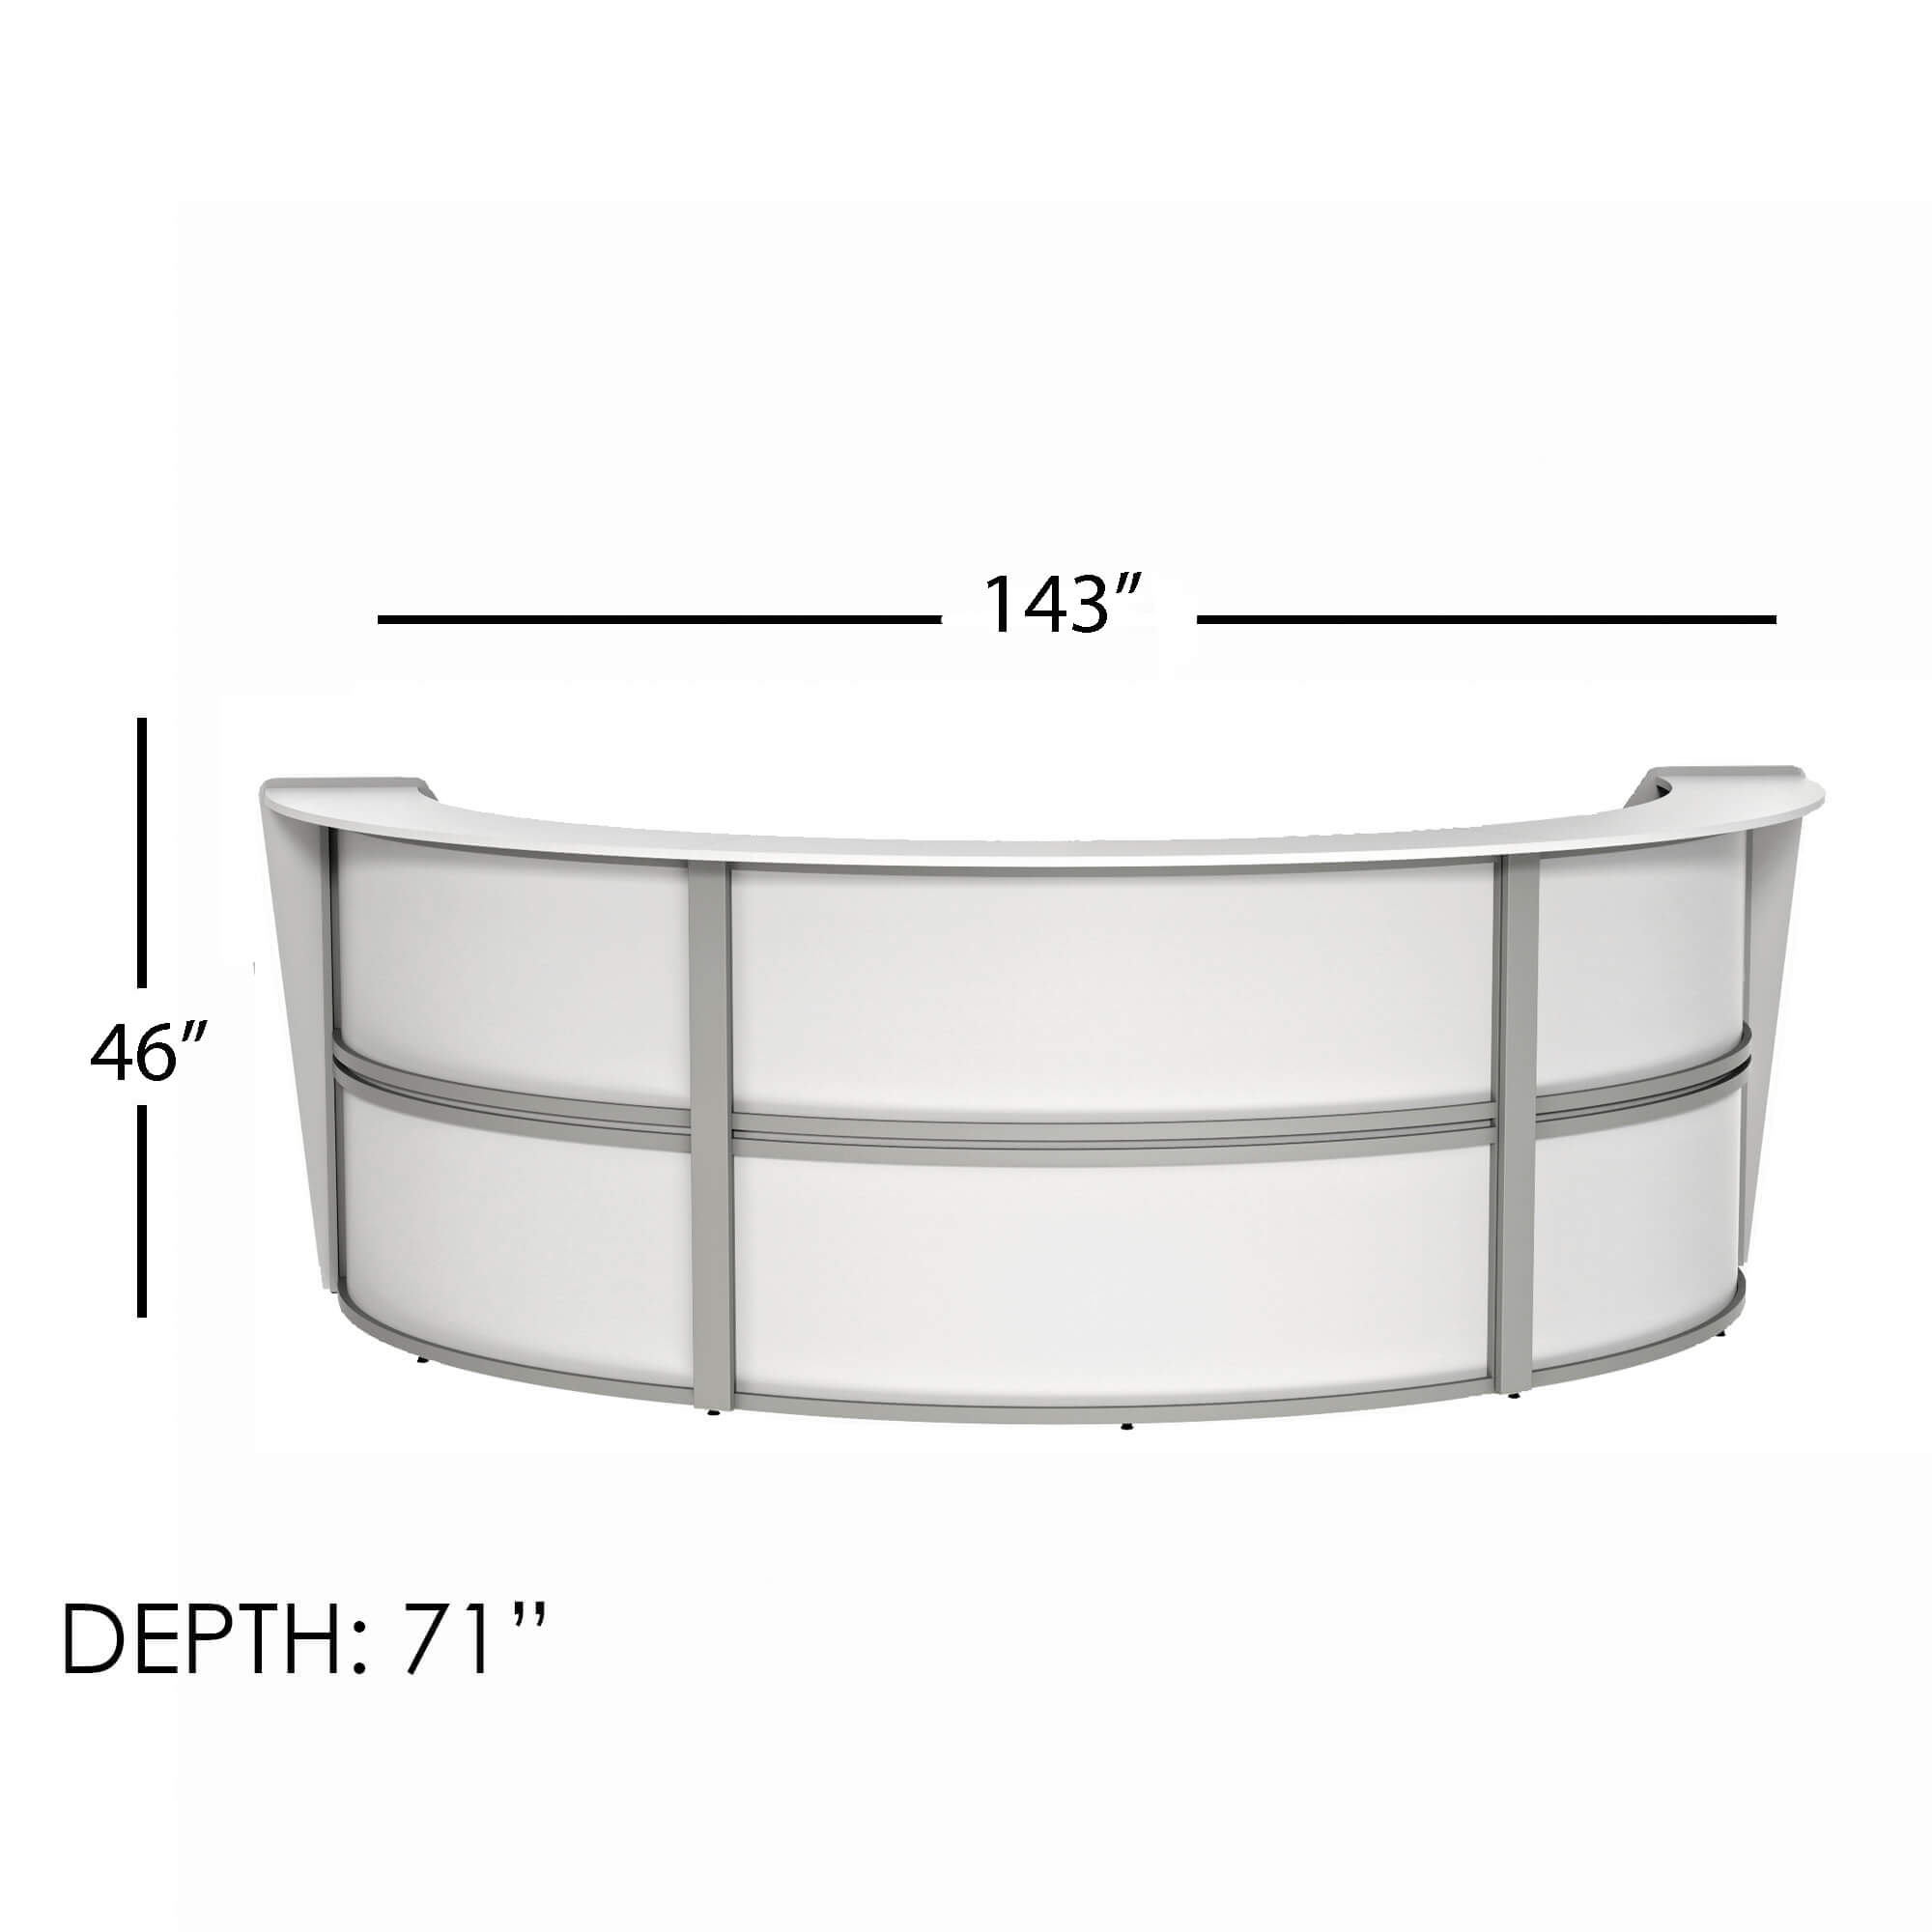 Li1 elegant semi circular reception desk dimensions 1